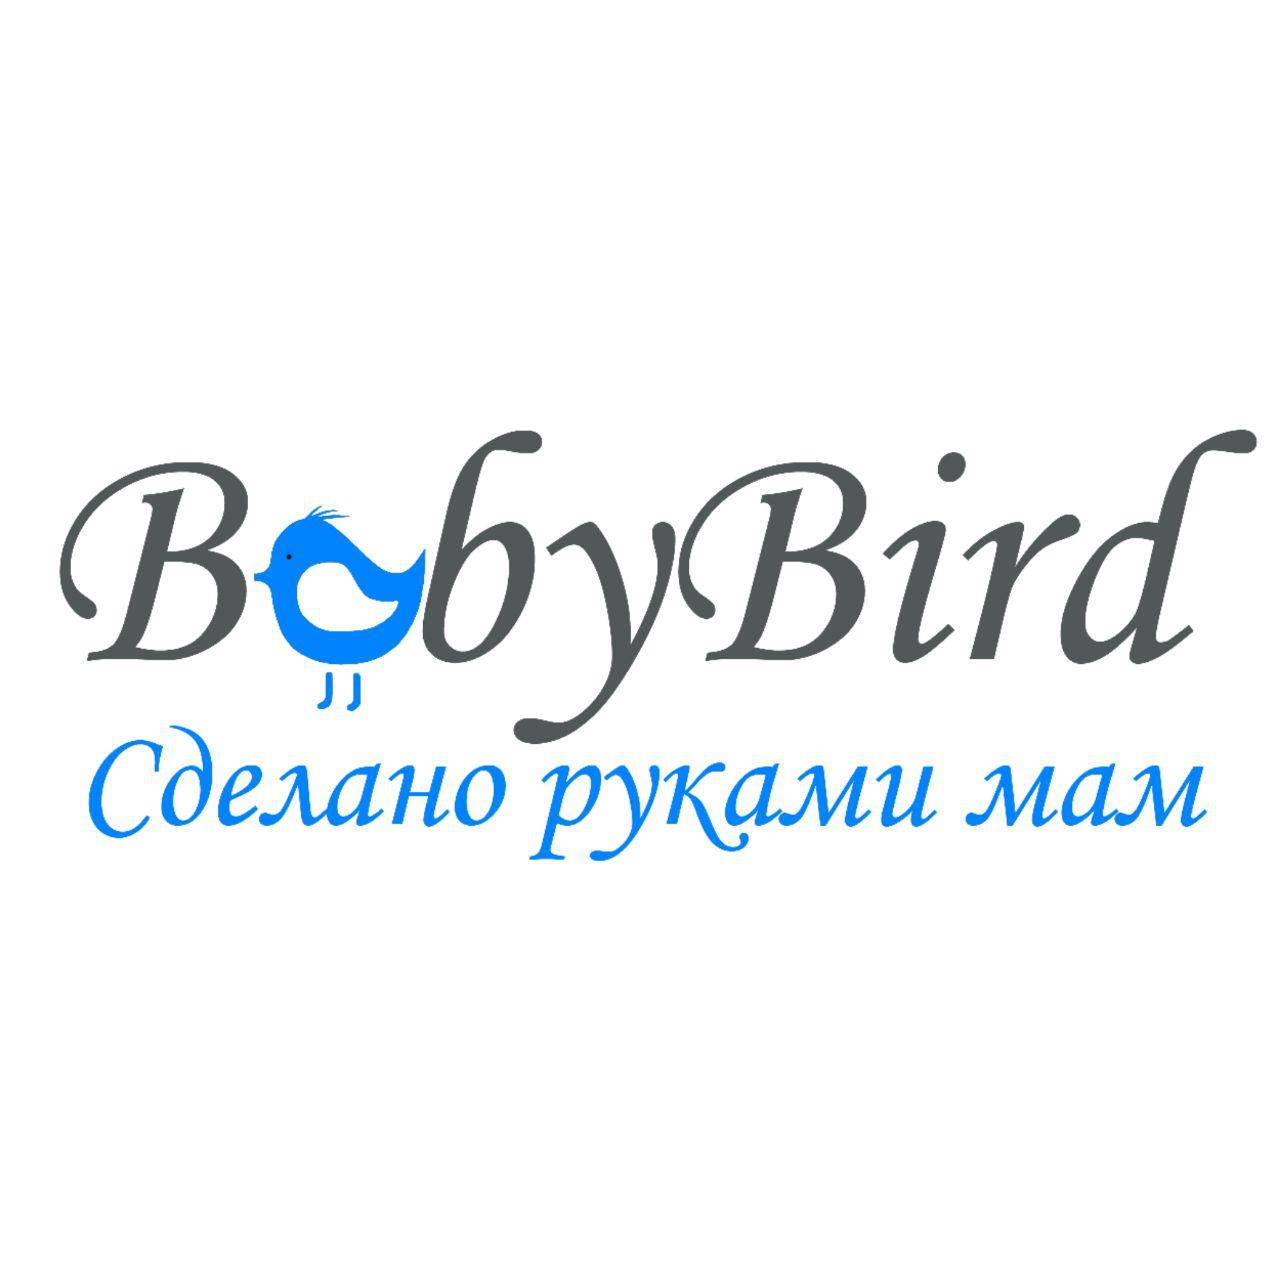 BabyBird